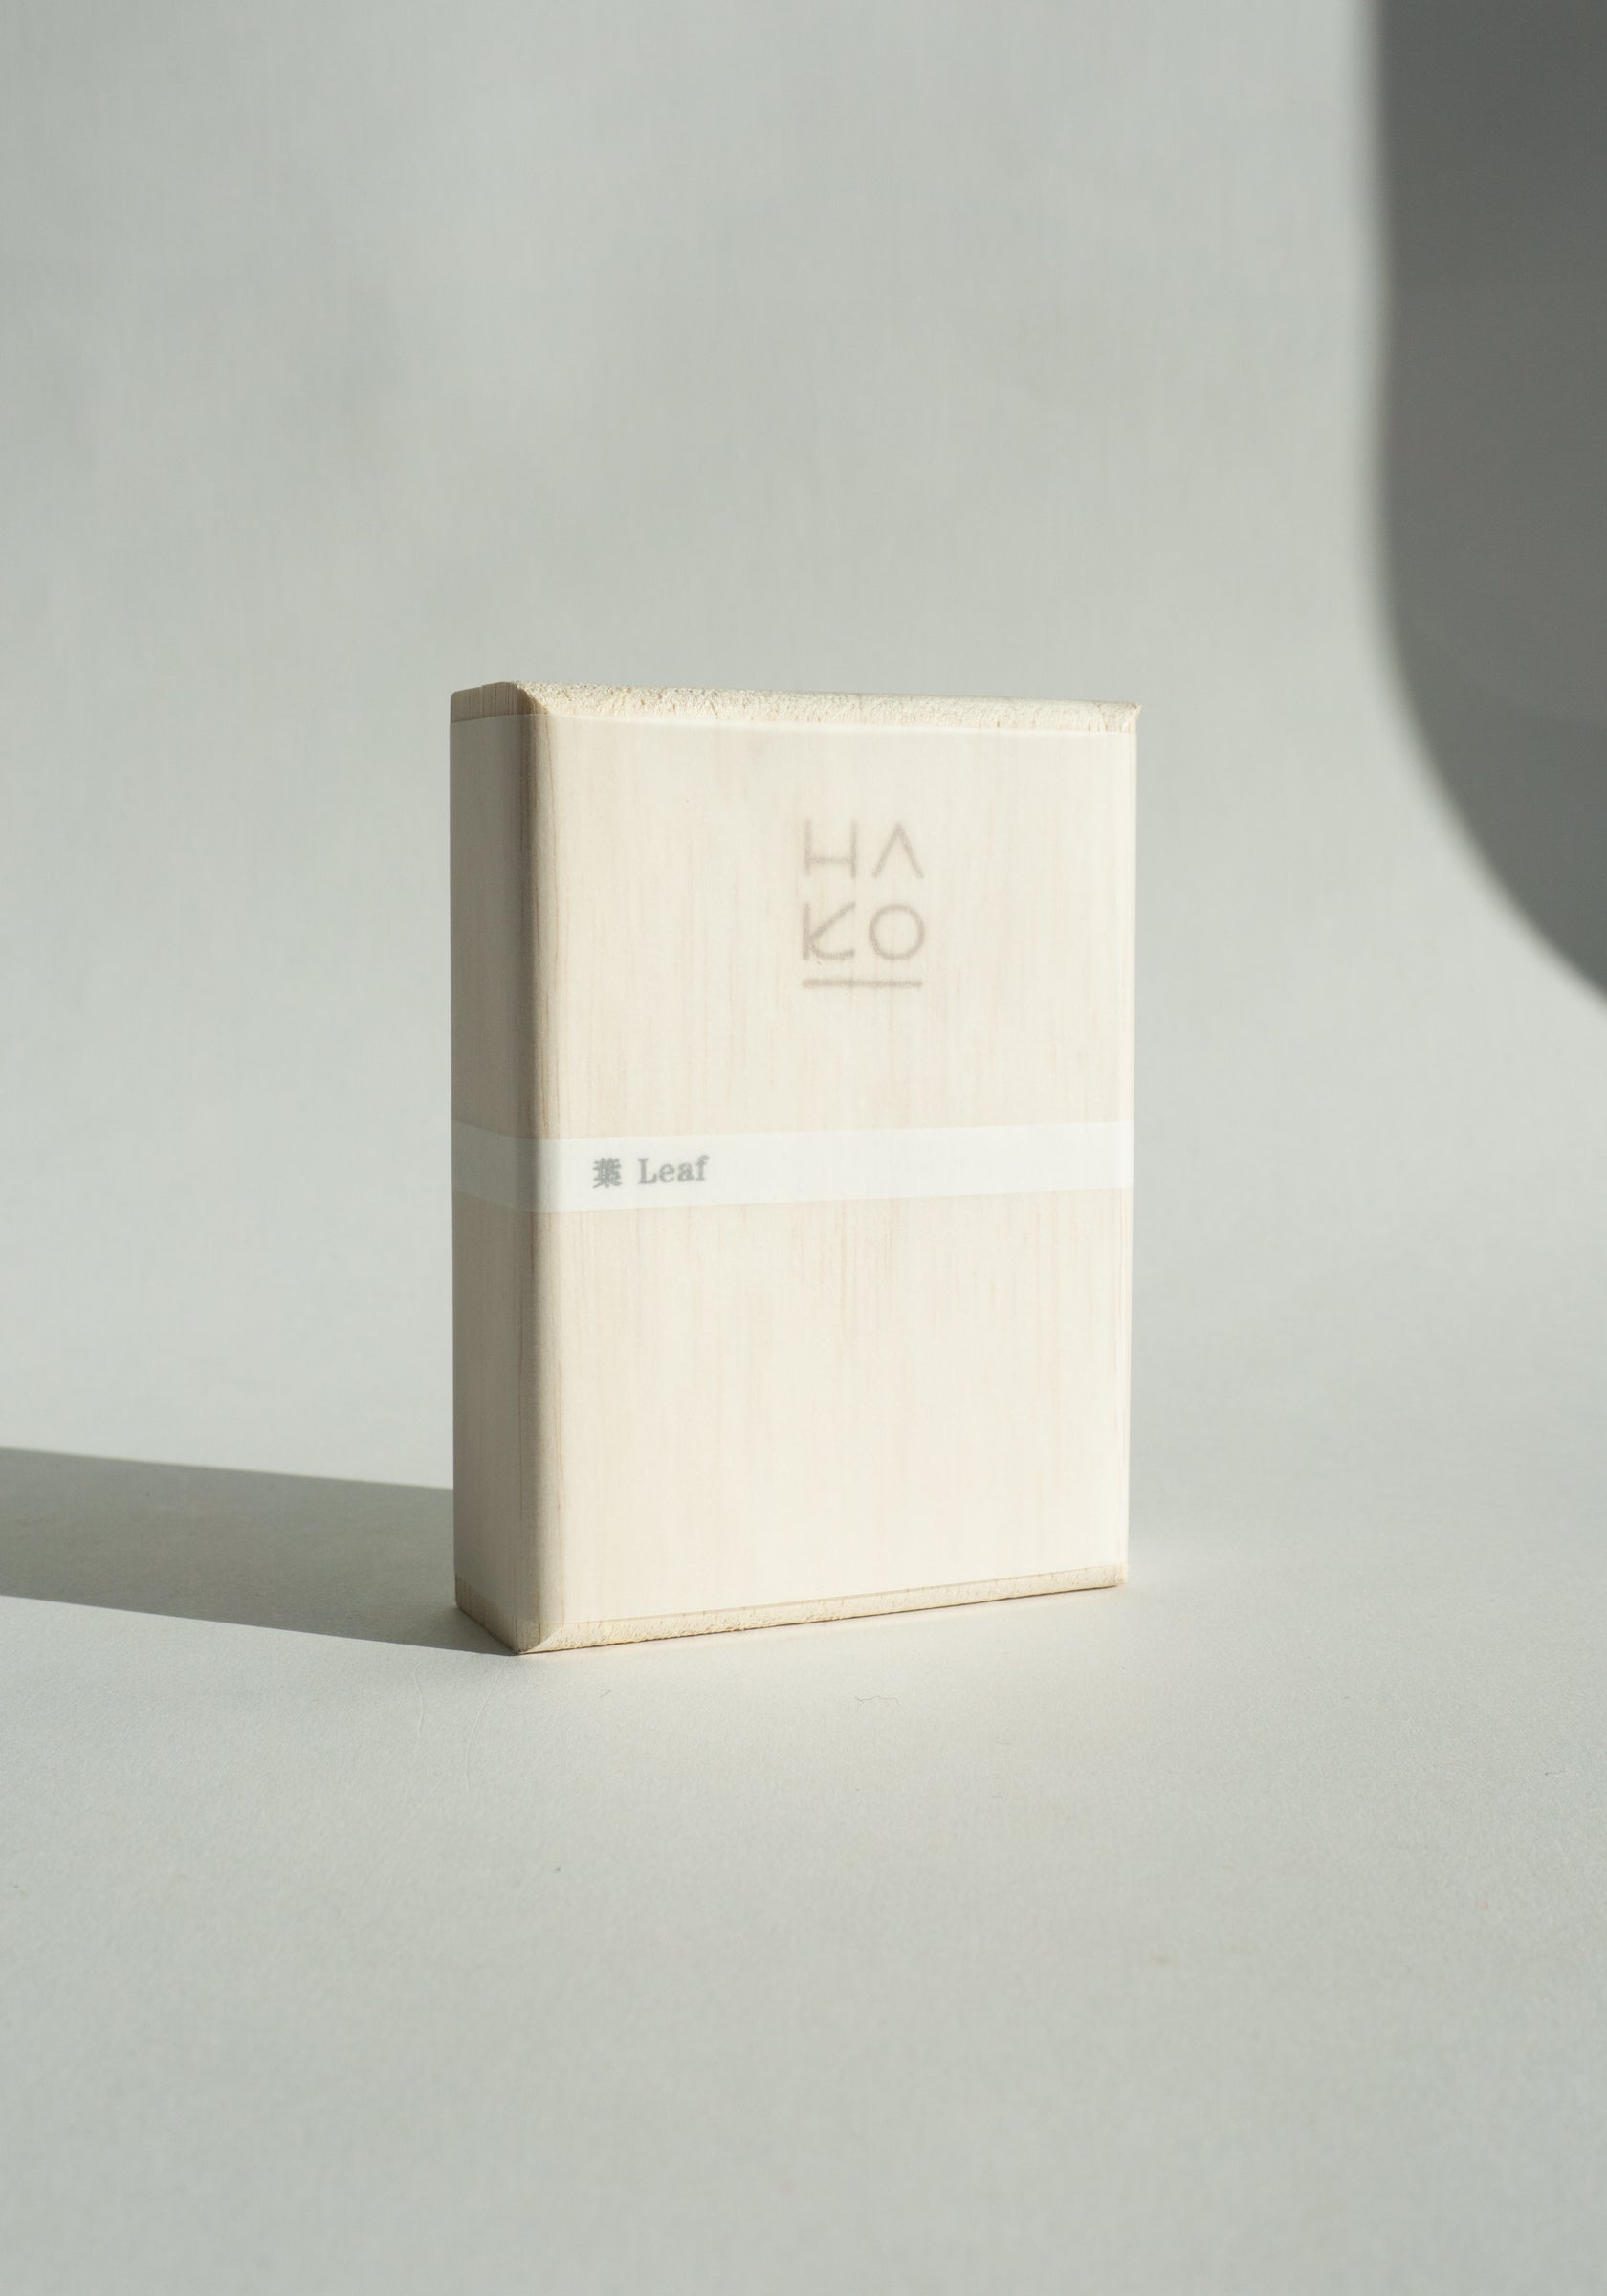 Morihata HA KO Paper Incense Box